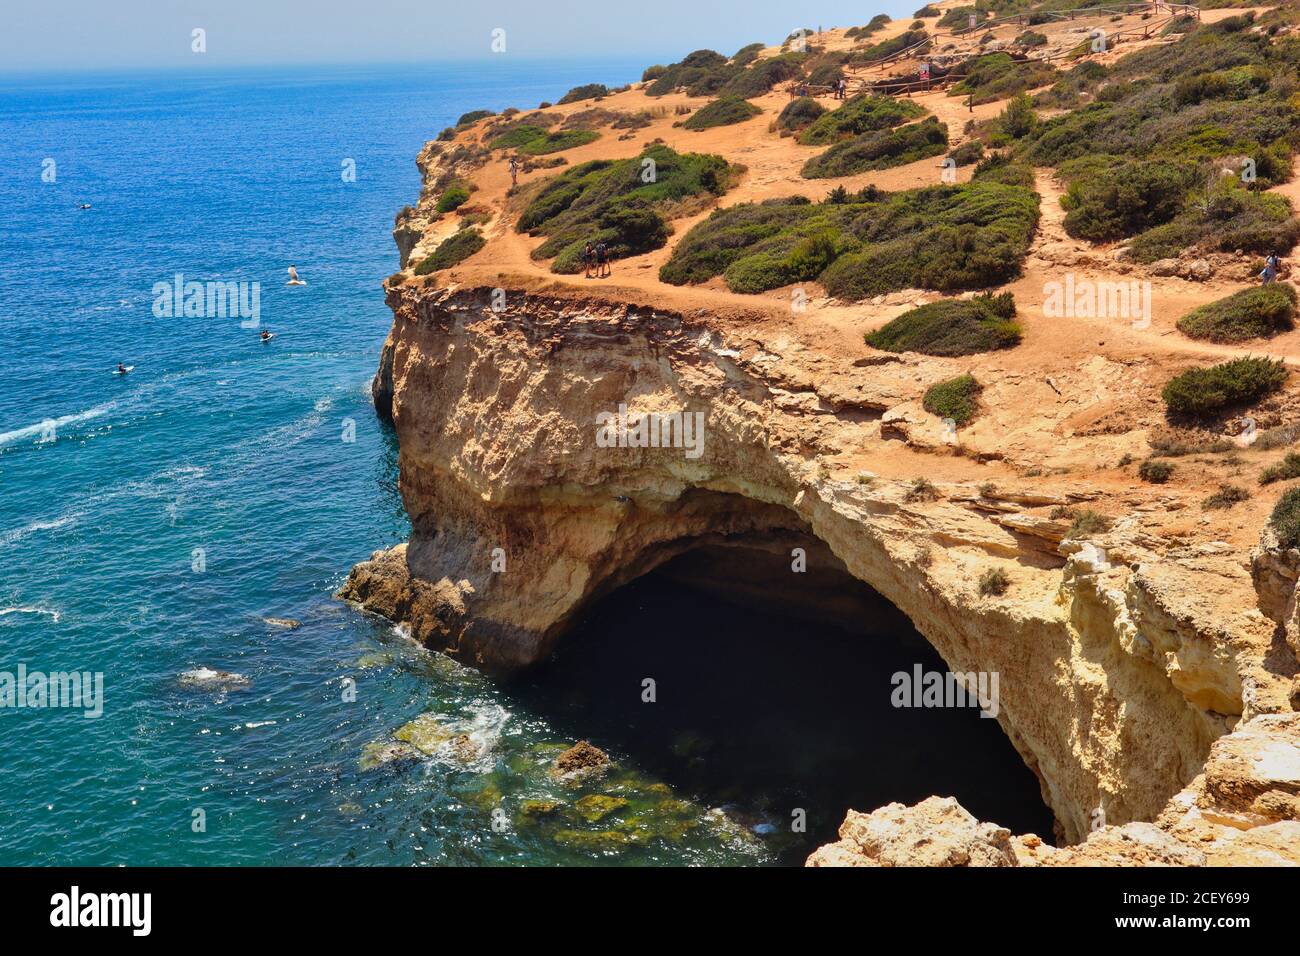 Benagil Cave, Blick Von Oben Mit Türkisfarbener Atlantischer Ozean. Spektakuläre Aussicht auf die Benagil Grotte von oben in Carvoeiro. Stockfoto